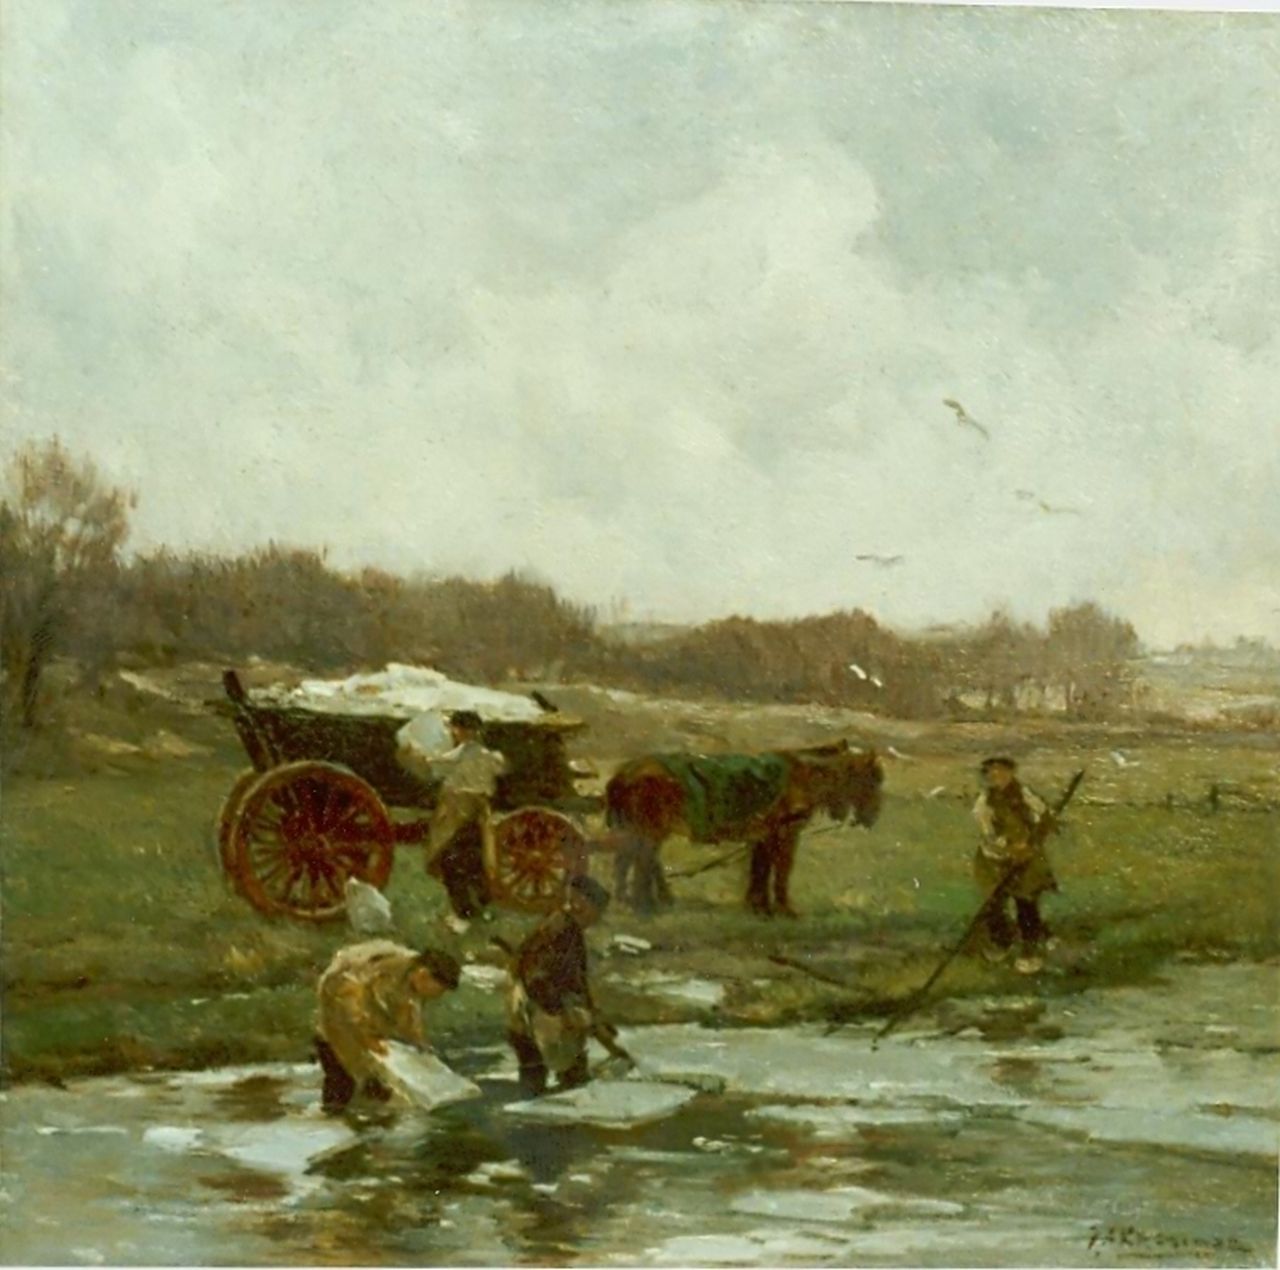 Akkeringa J.E.H.  | 'Johannes Evert' Hendrik Akkeringa, Shoveling ice, oil on canvas laid down on panel 38.0 x 38.0 cm, signed l.r.